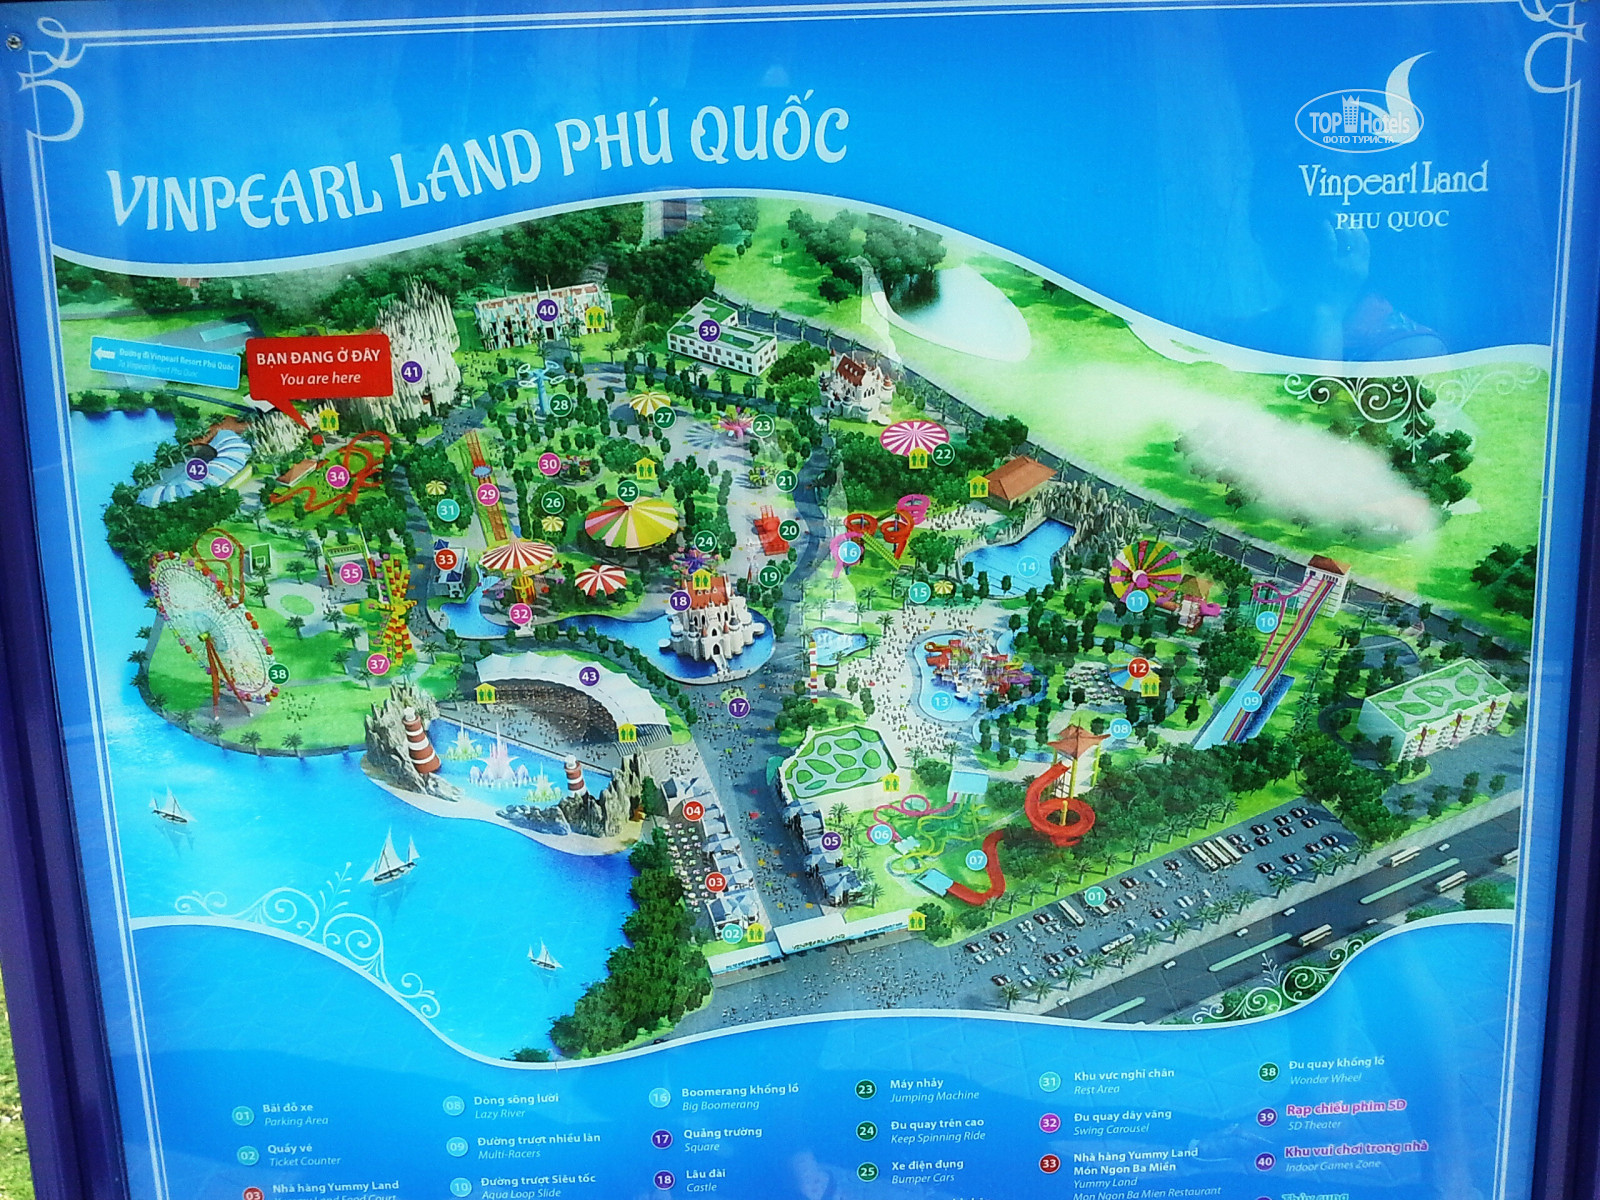 Отель vinoasis phu quoc resort – новый отель сети винперл на острове фукуок во вьетнаме. отзыв, фото, видеоolgatravel.com